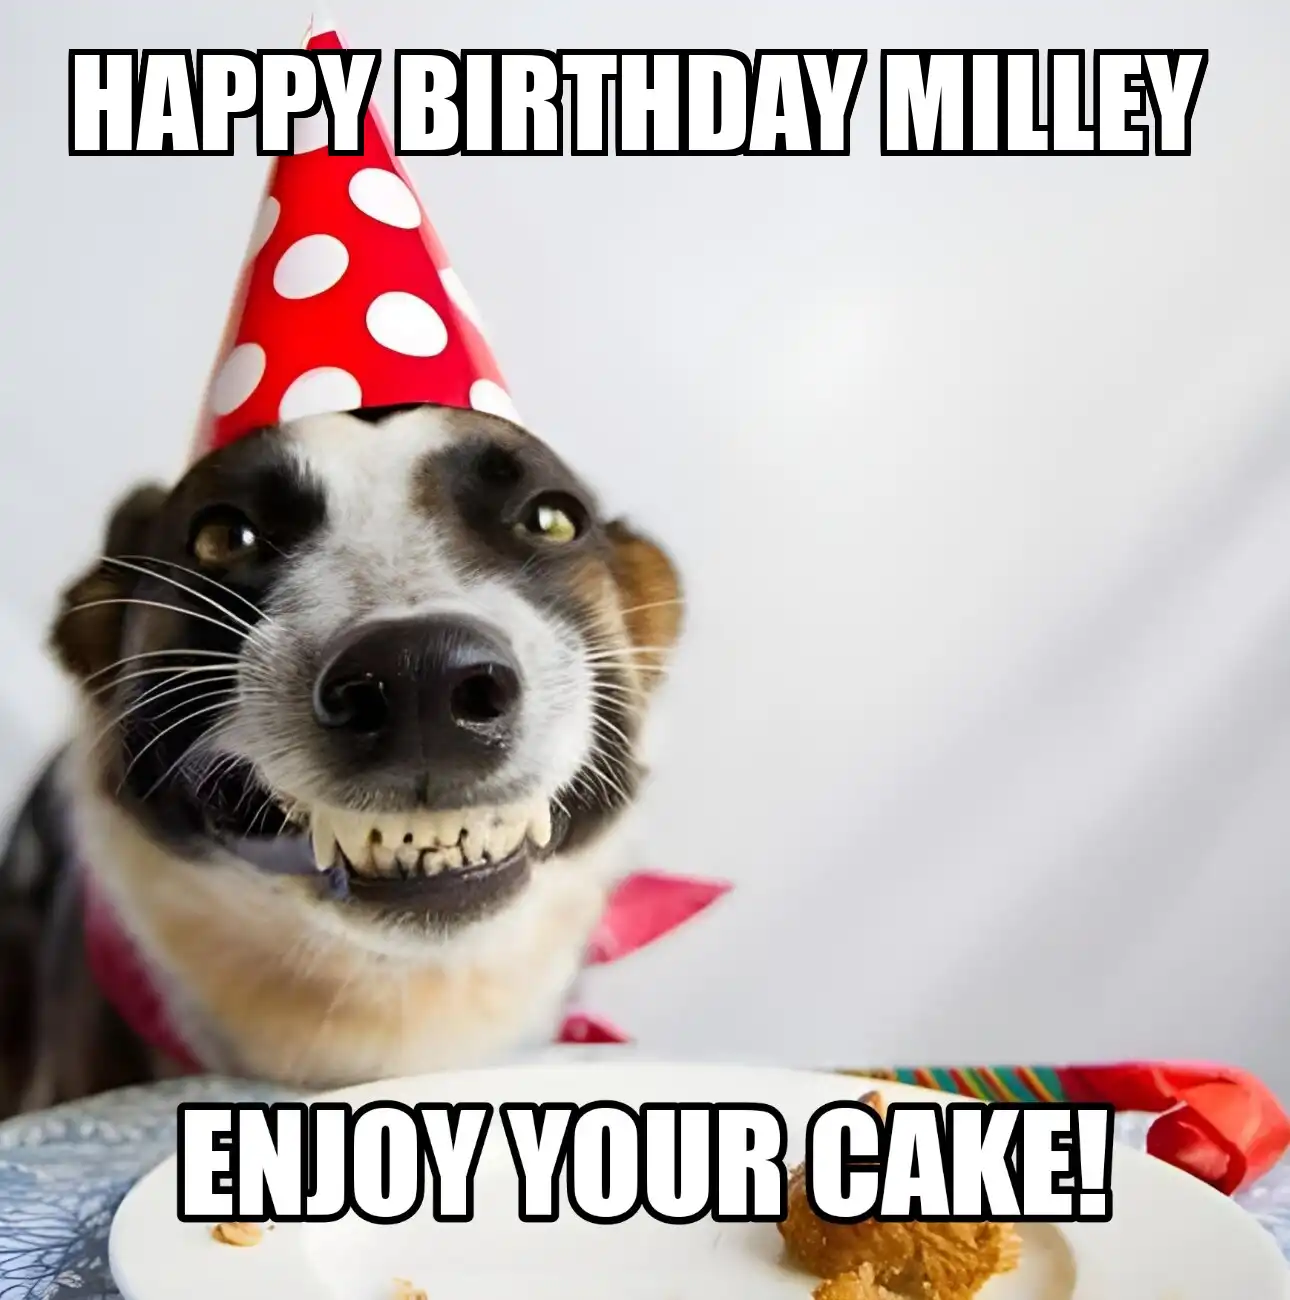 Happy Birthday Milley Enjoy Your Cake Dog Meme